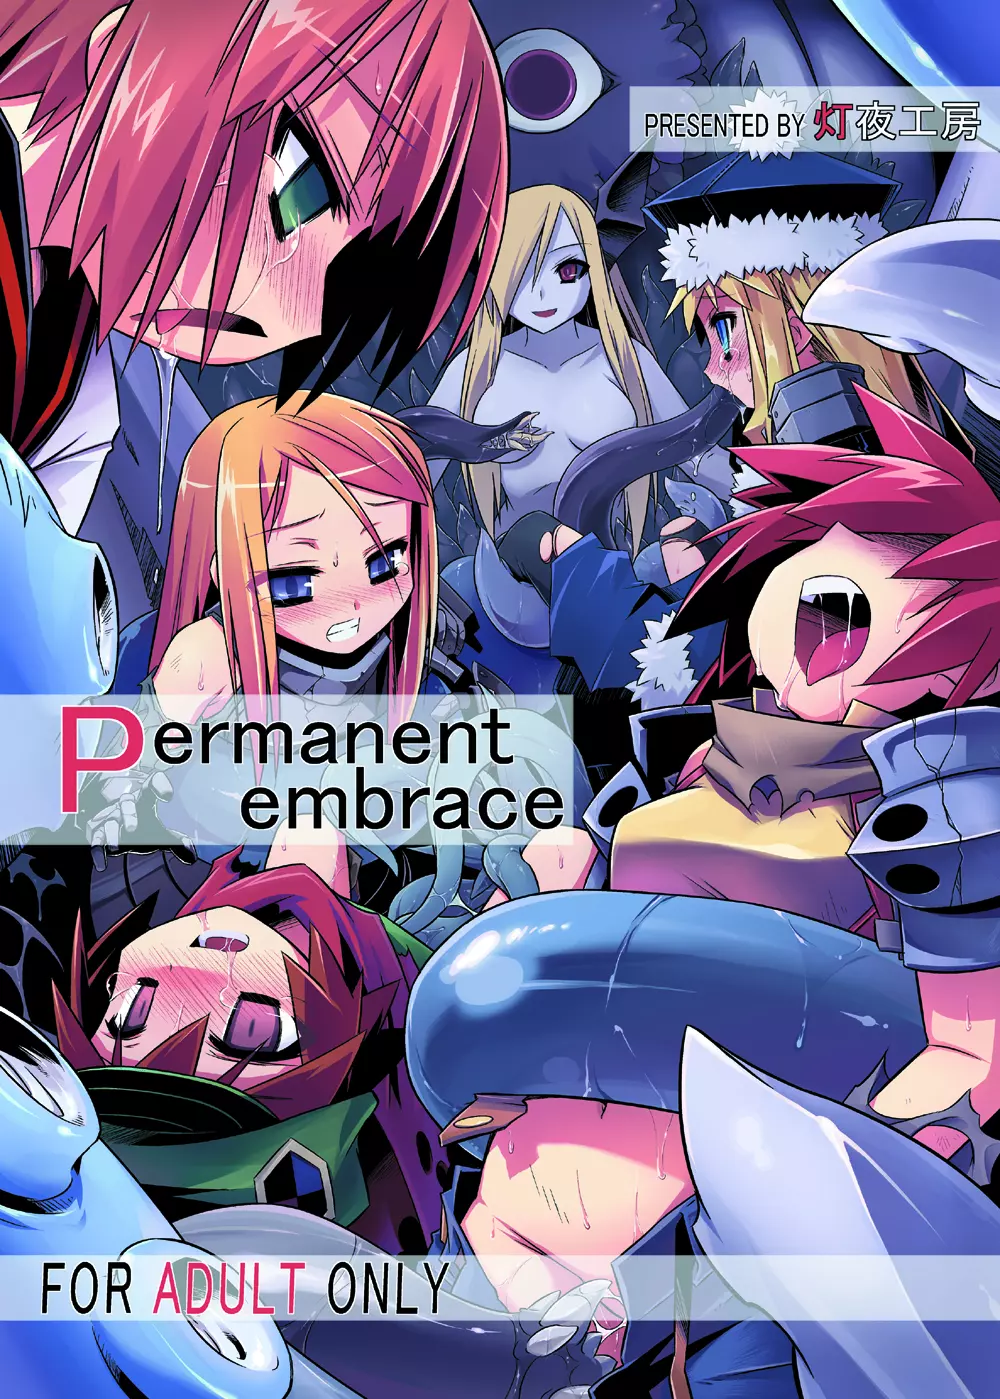 Permanent embrace